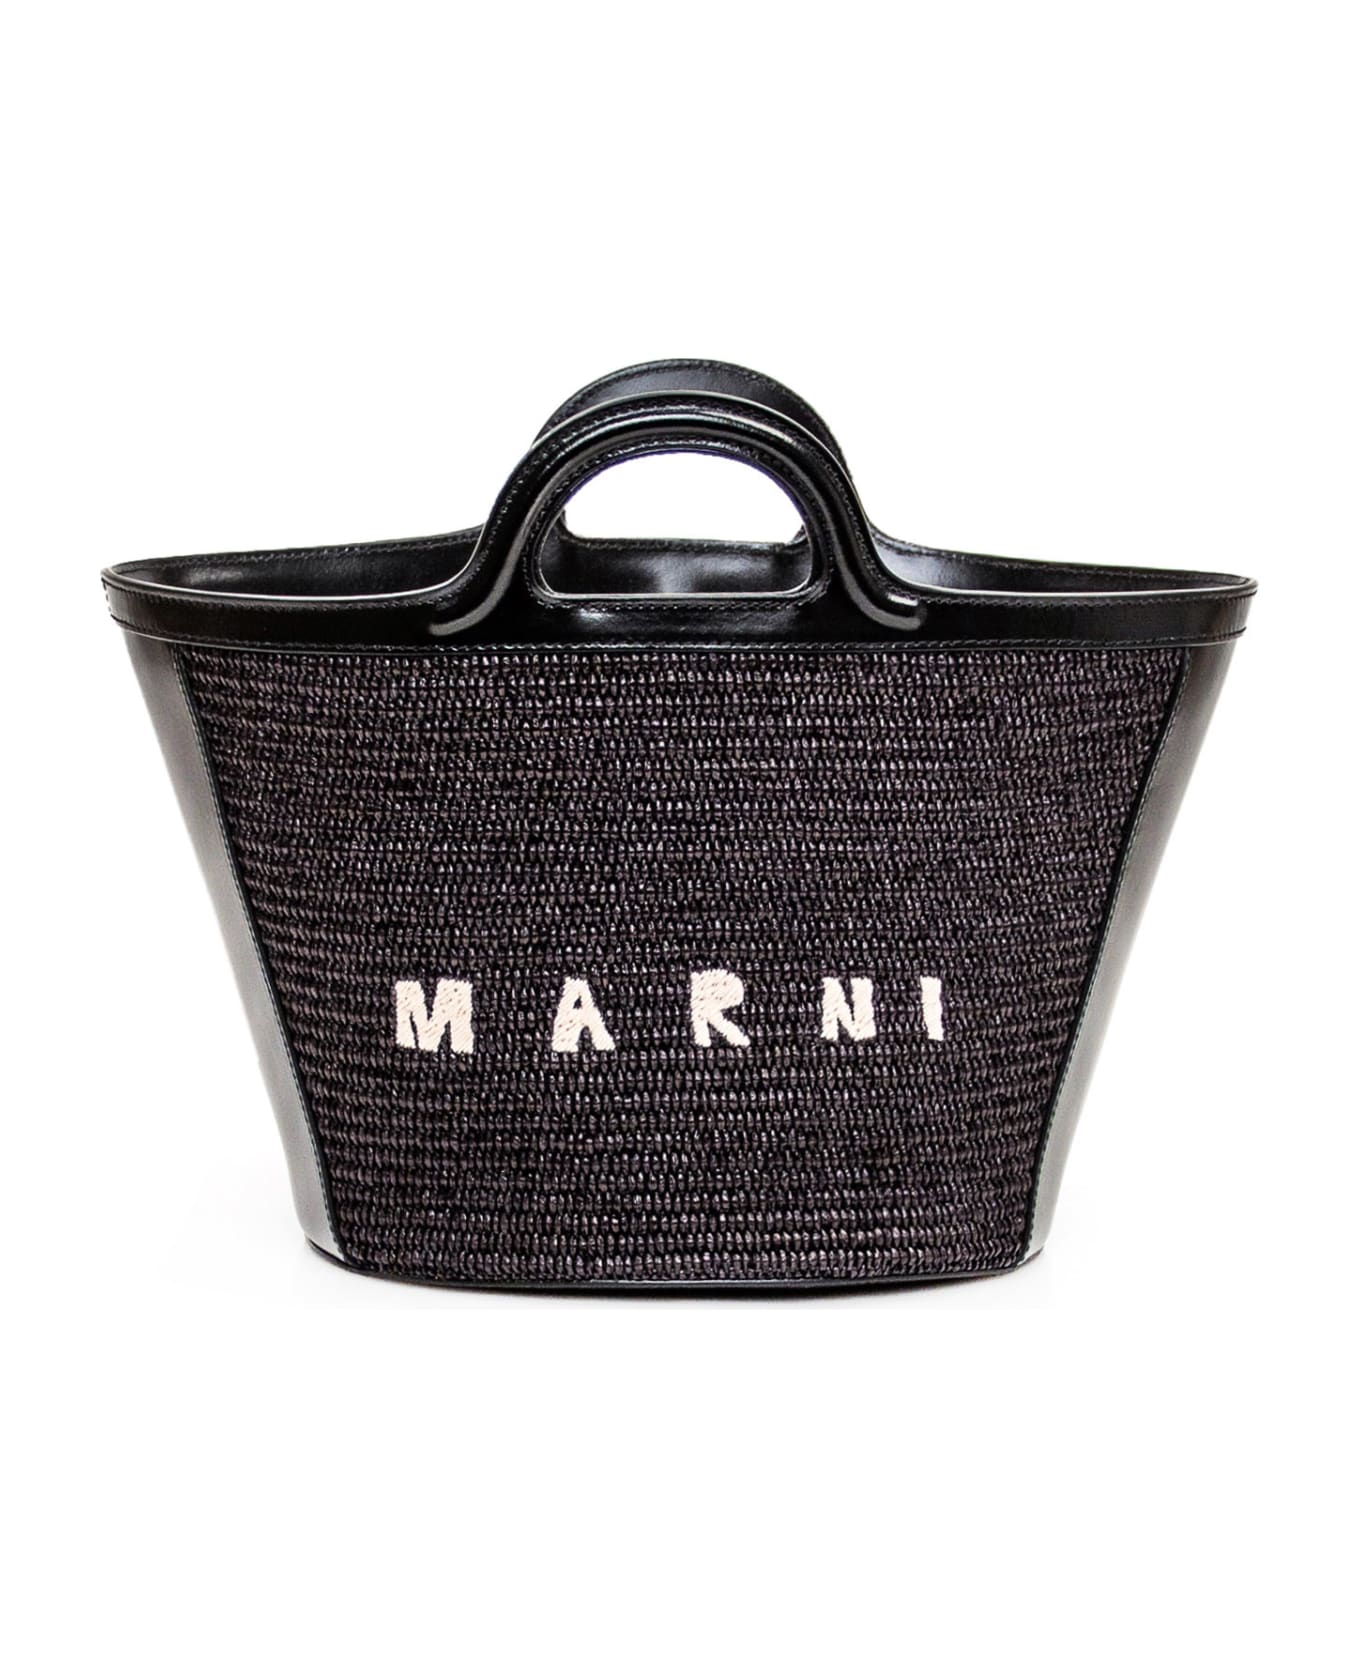 Marni Tropicalia Small Bag - BLACK